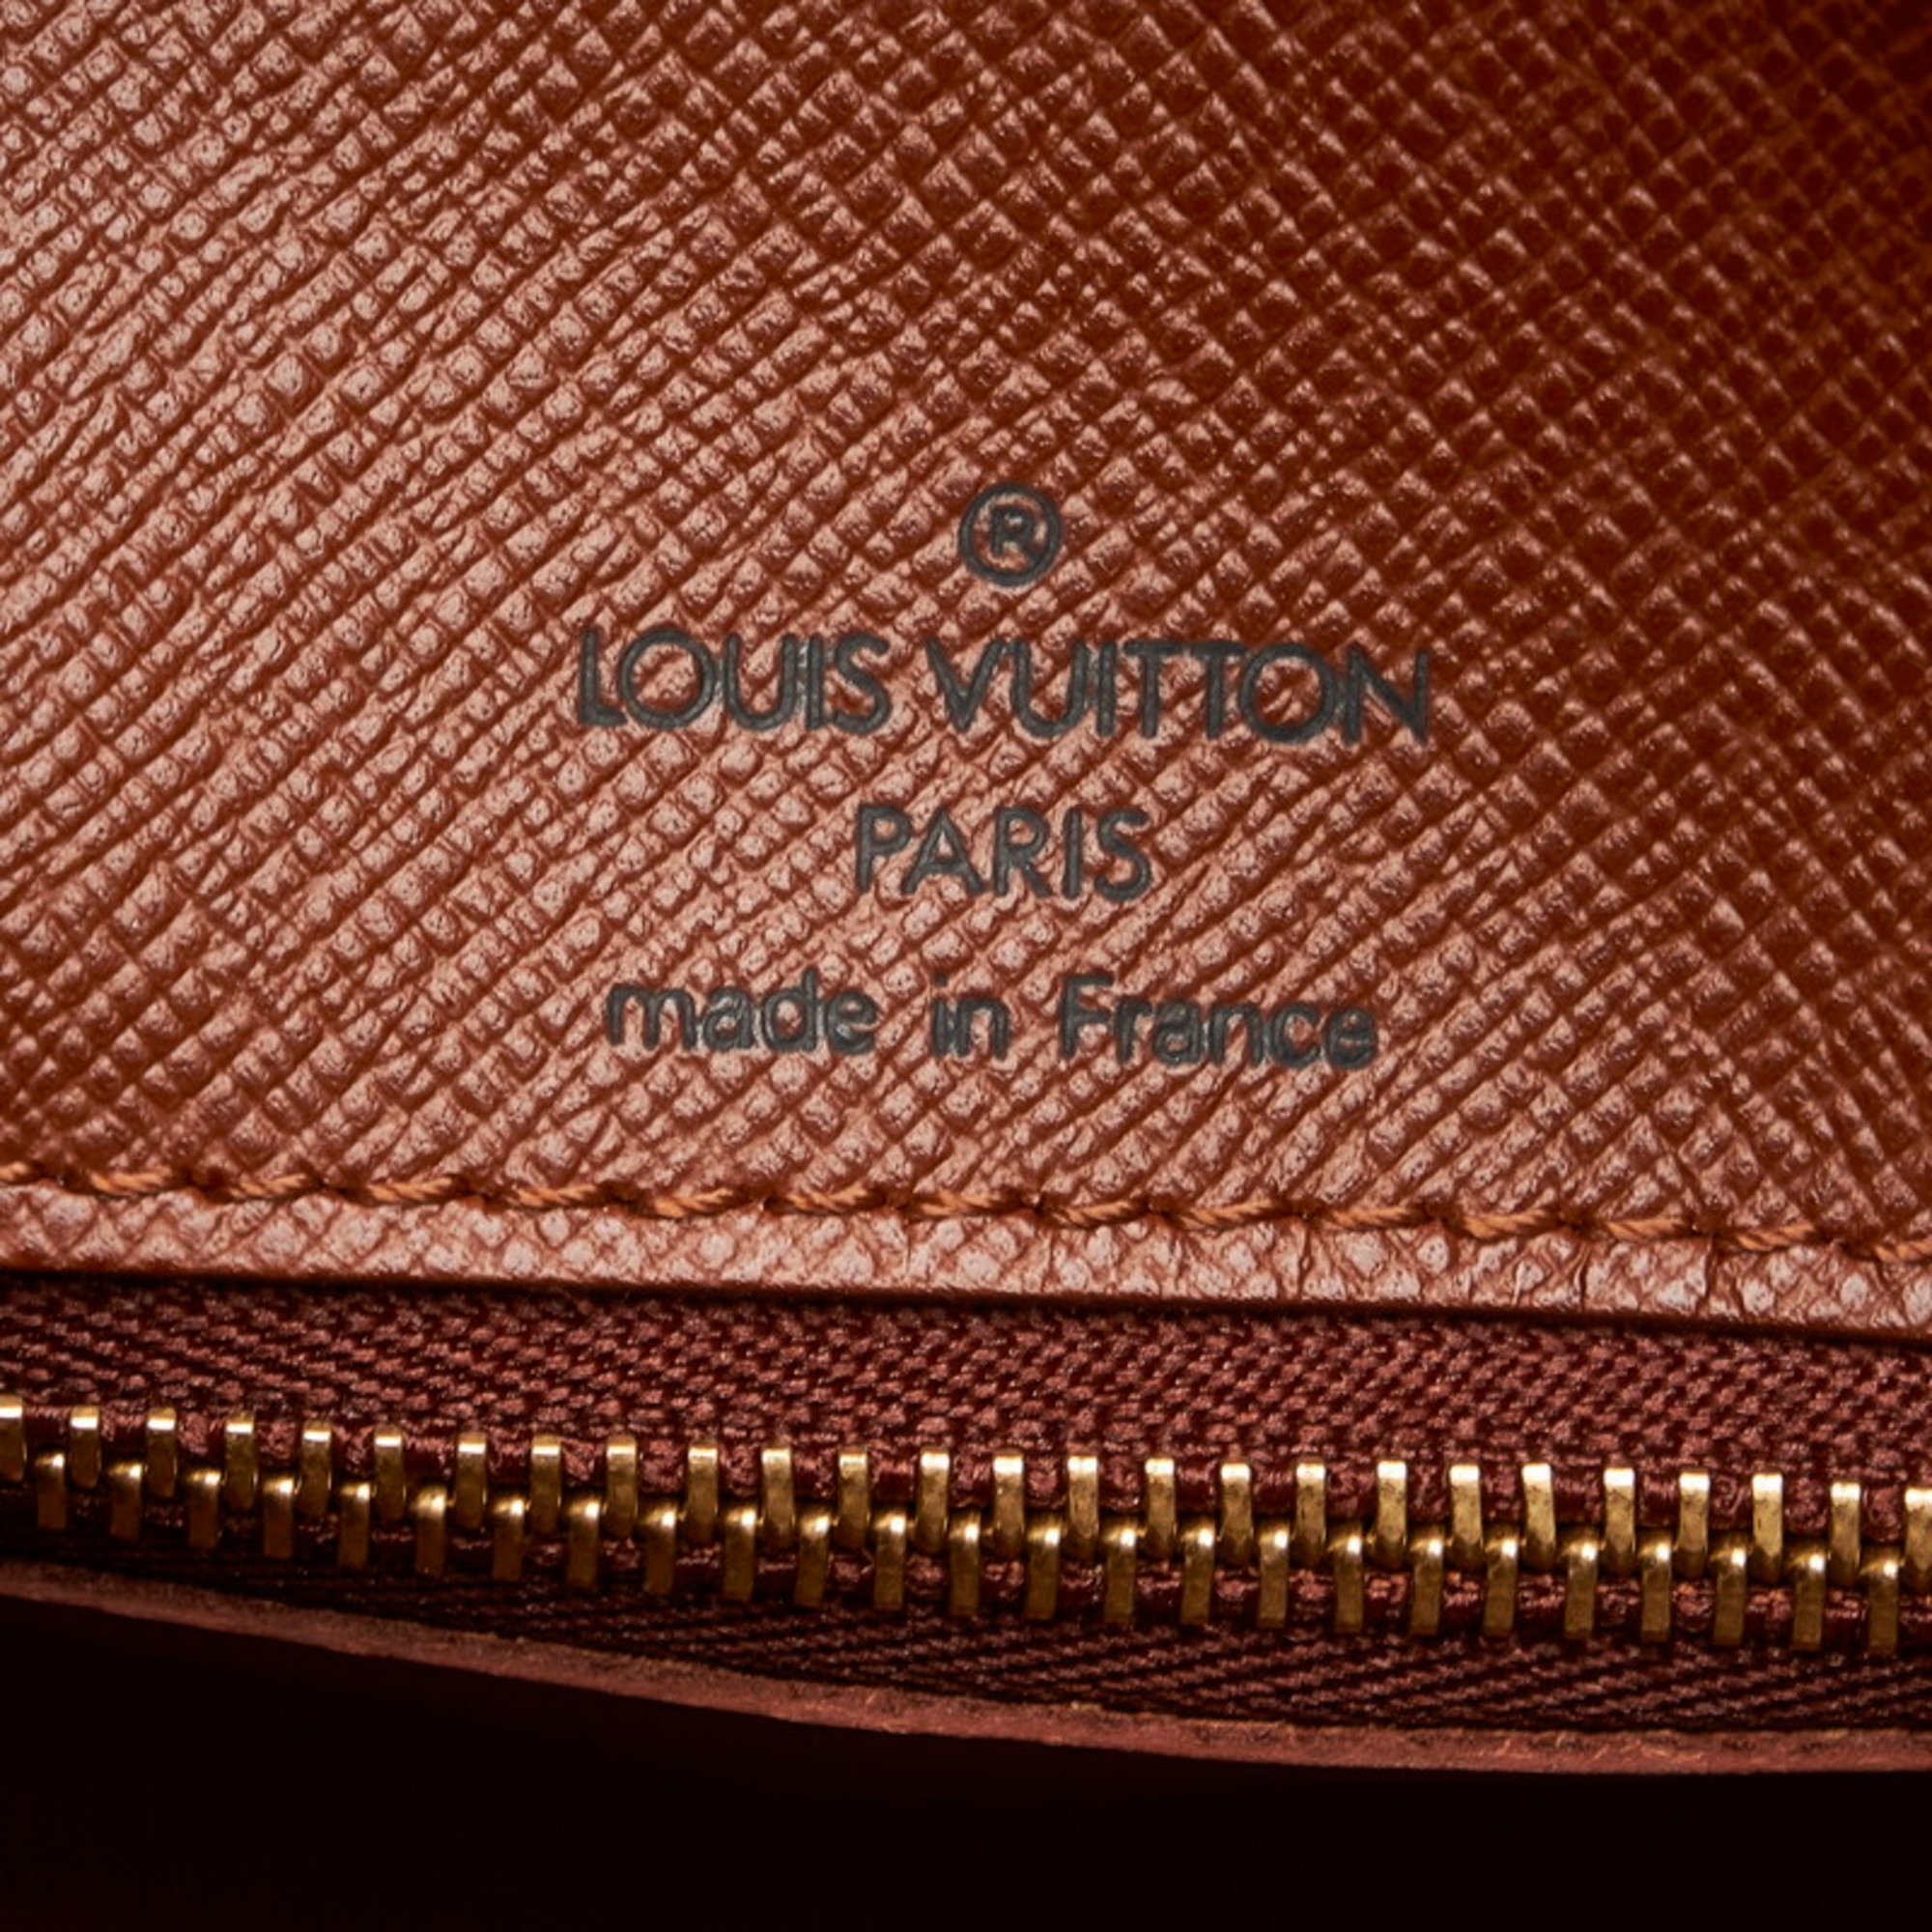 Louis Vuitton Monogram Boulogne 30 Shoulder Bag M51265 Brown PVC Leather Ladies LOUIS VUITTON